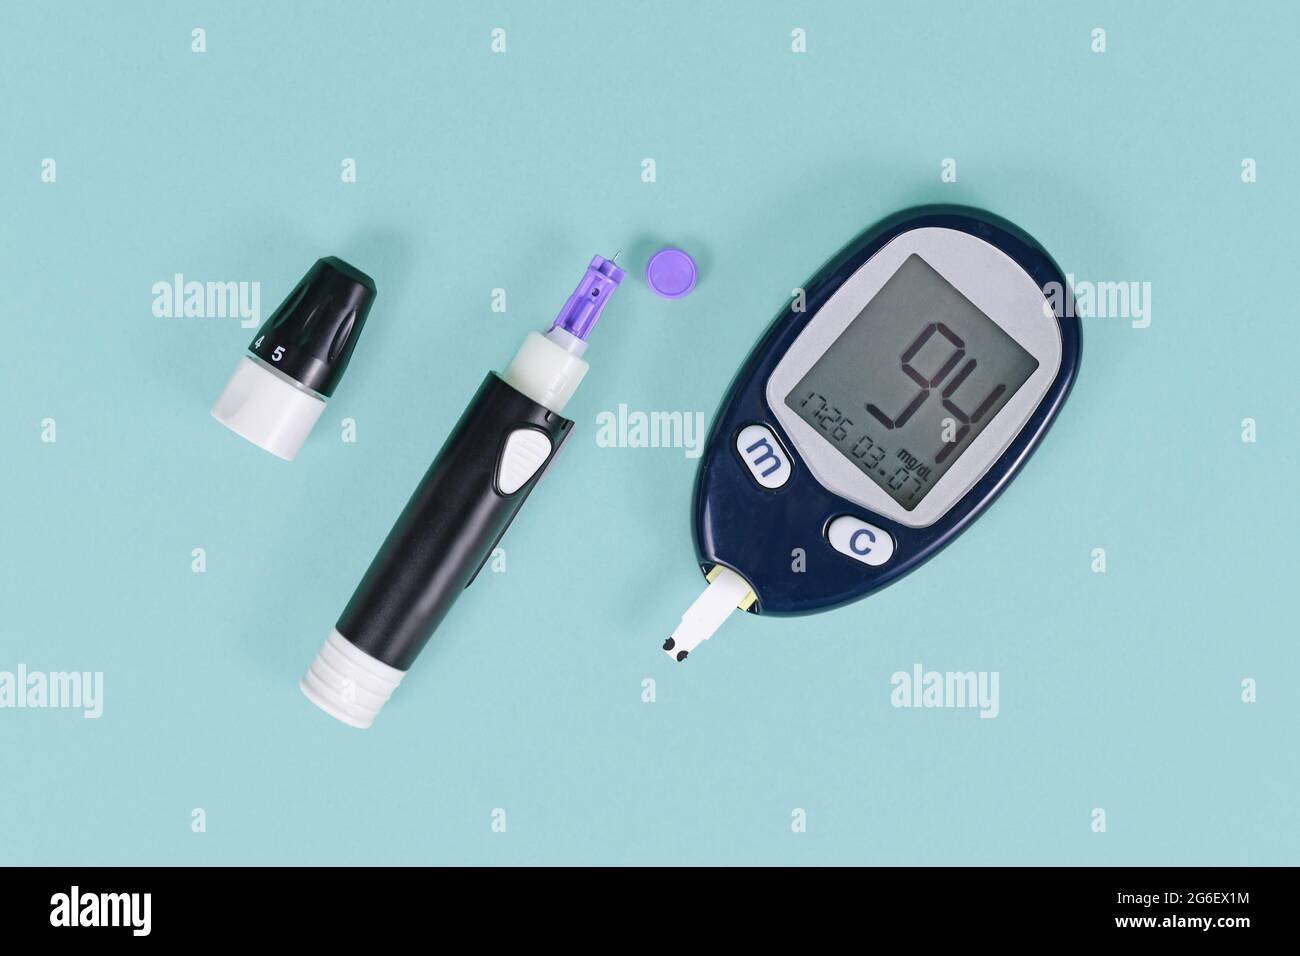 Outils pour le traitement du diabète avec glucomètre de sang montrant le sucre de sang de 94 et dispositif de lancette avec lancette sur fond bleu Banque D'Images